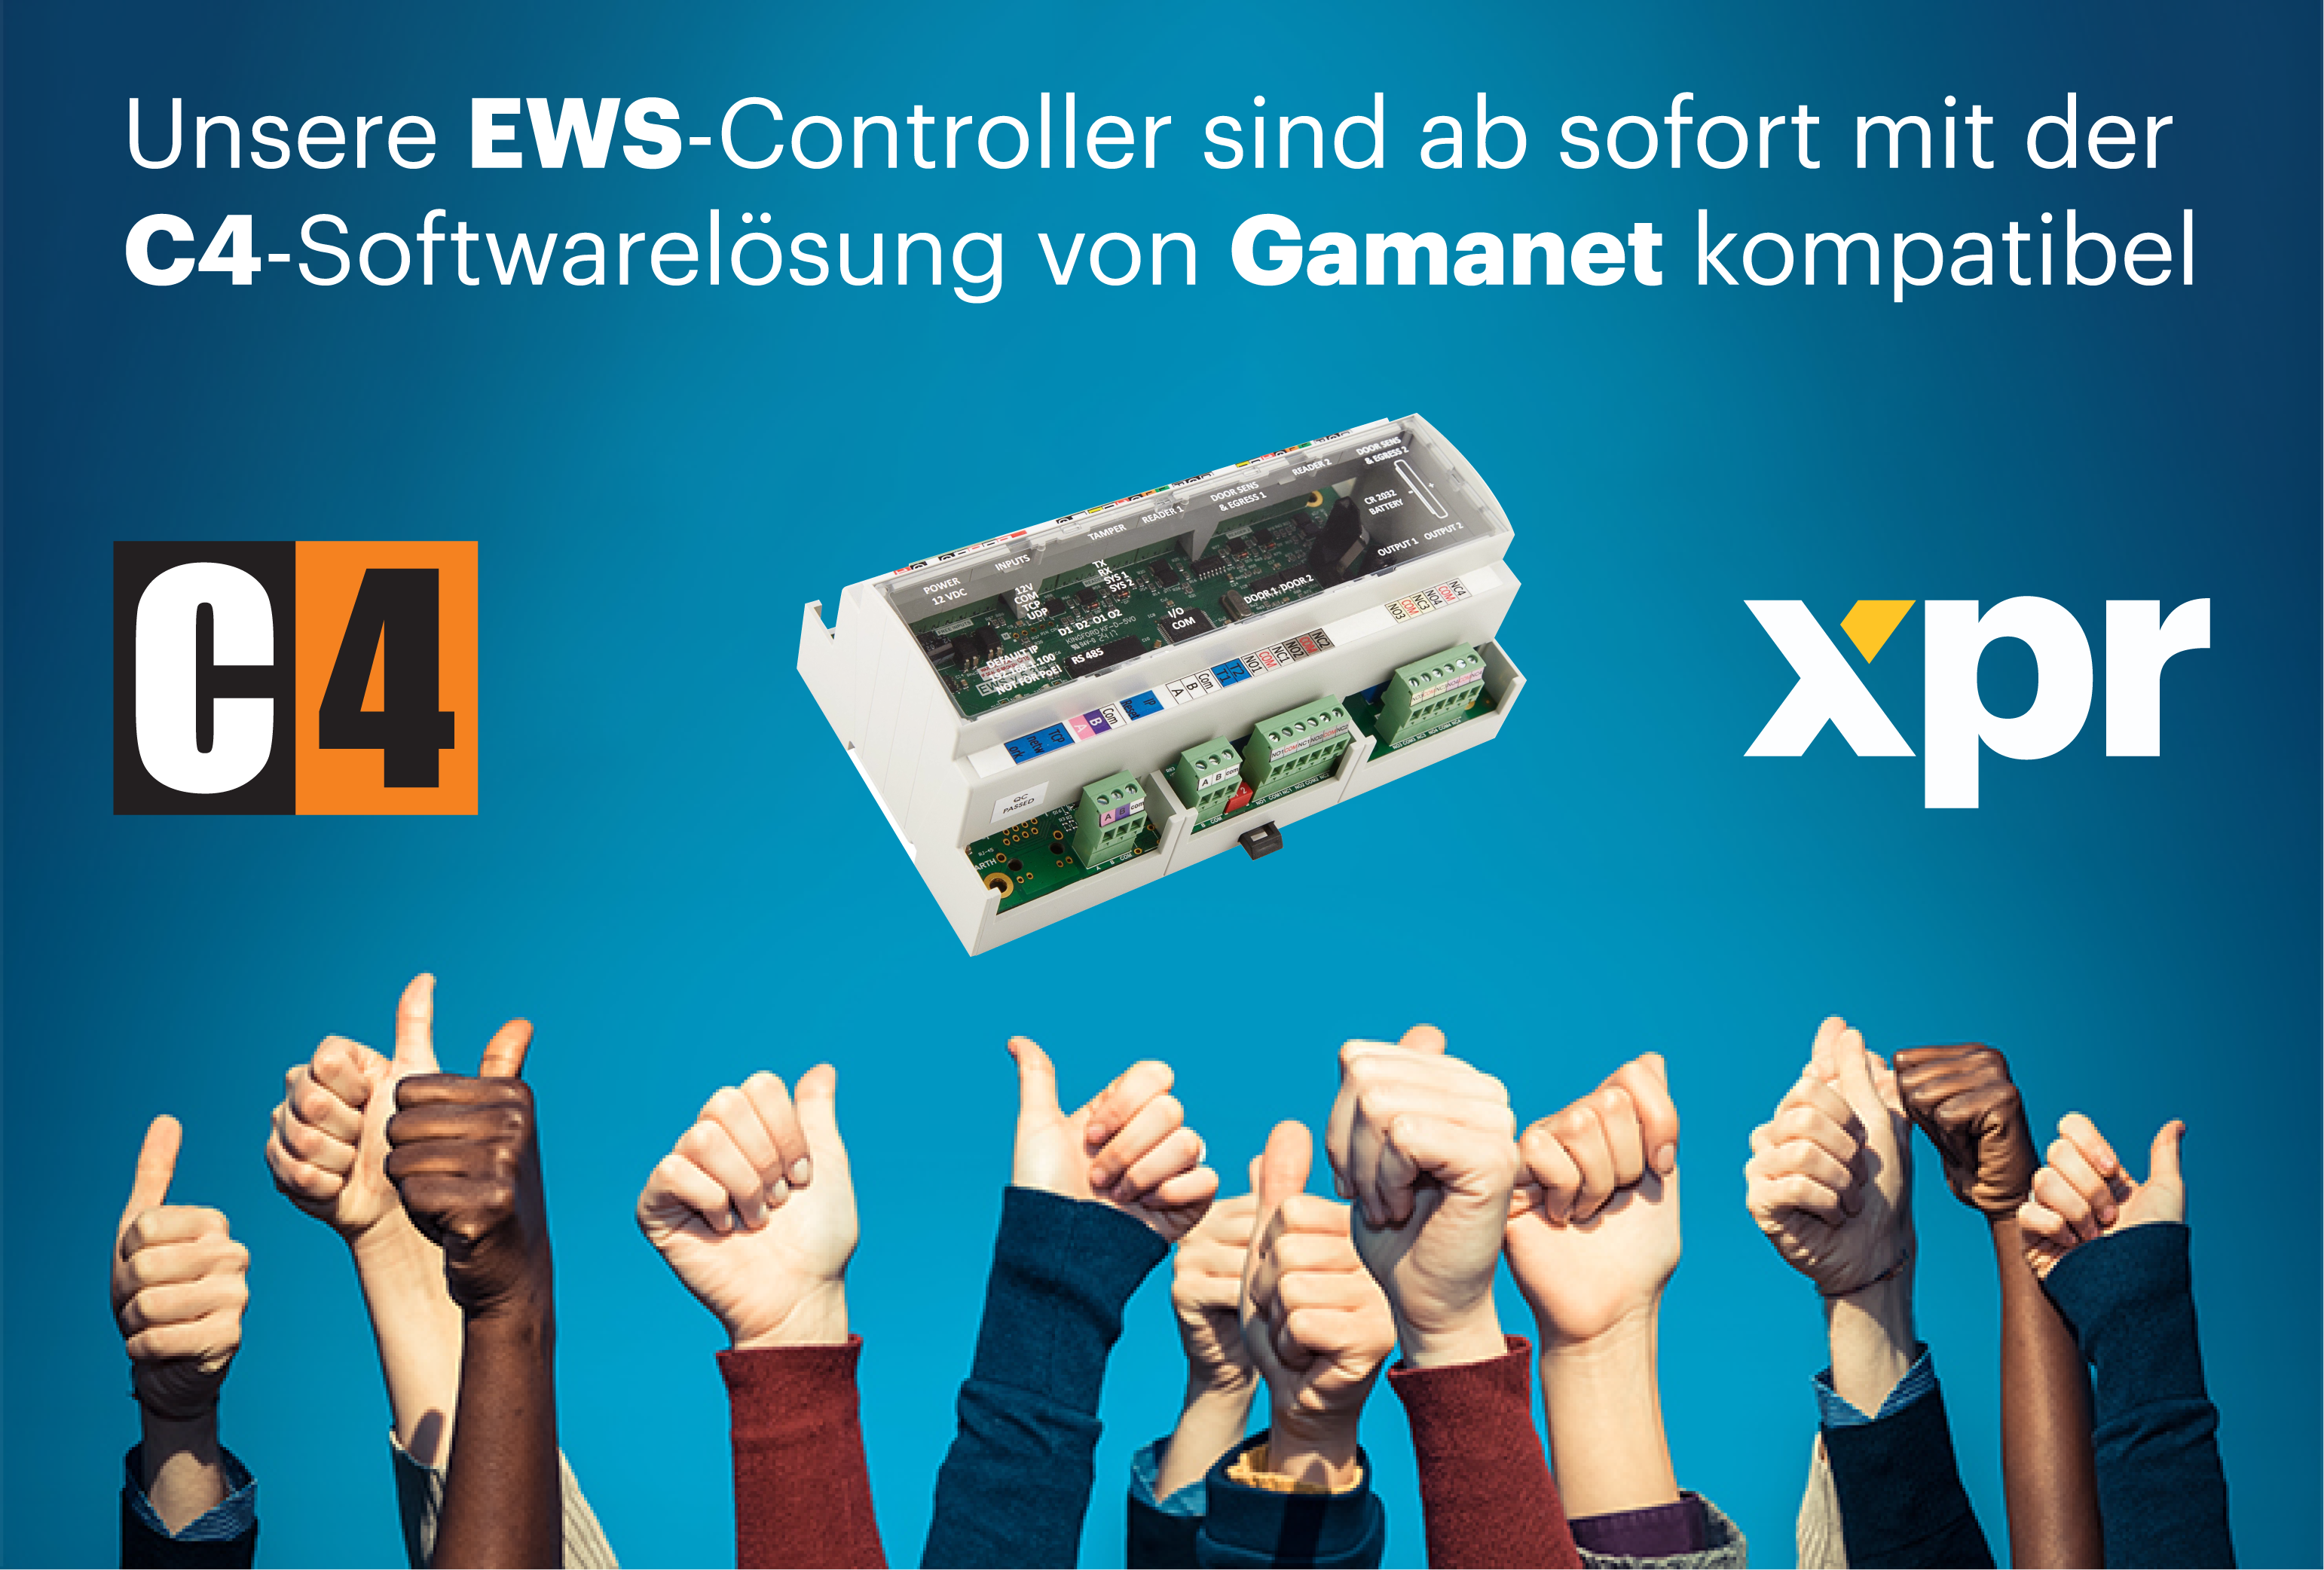 Unsere EWS-Controller sind ab sofort mit der C4-Softwarelösung von Gamanet kompatibel